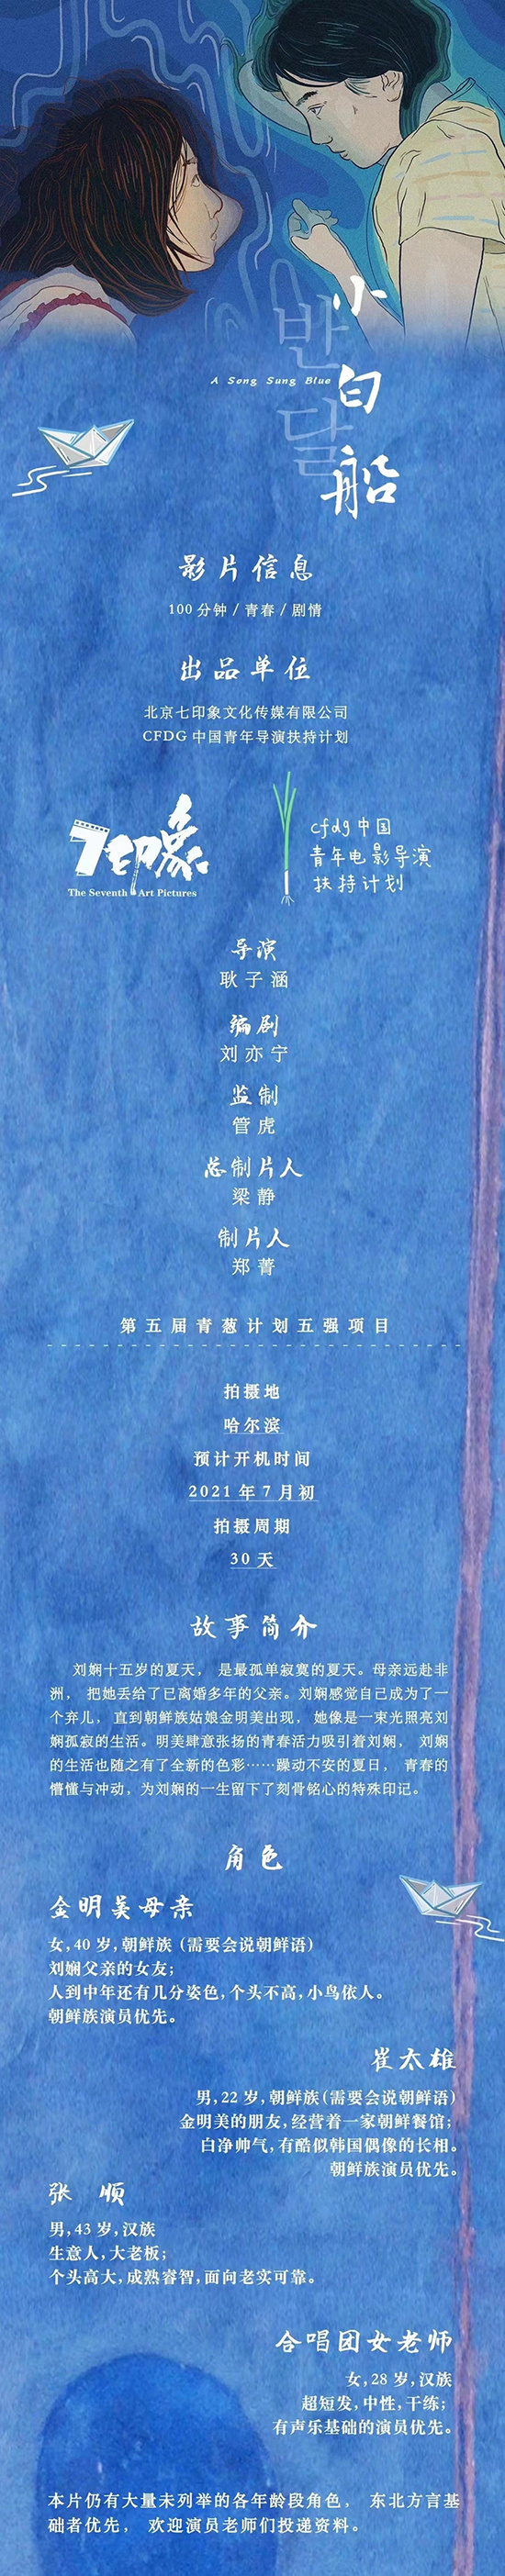 管虎监制青春片《小白船》发布组讯 今年7月开拍